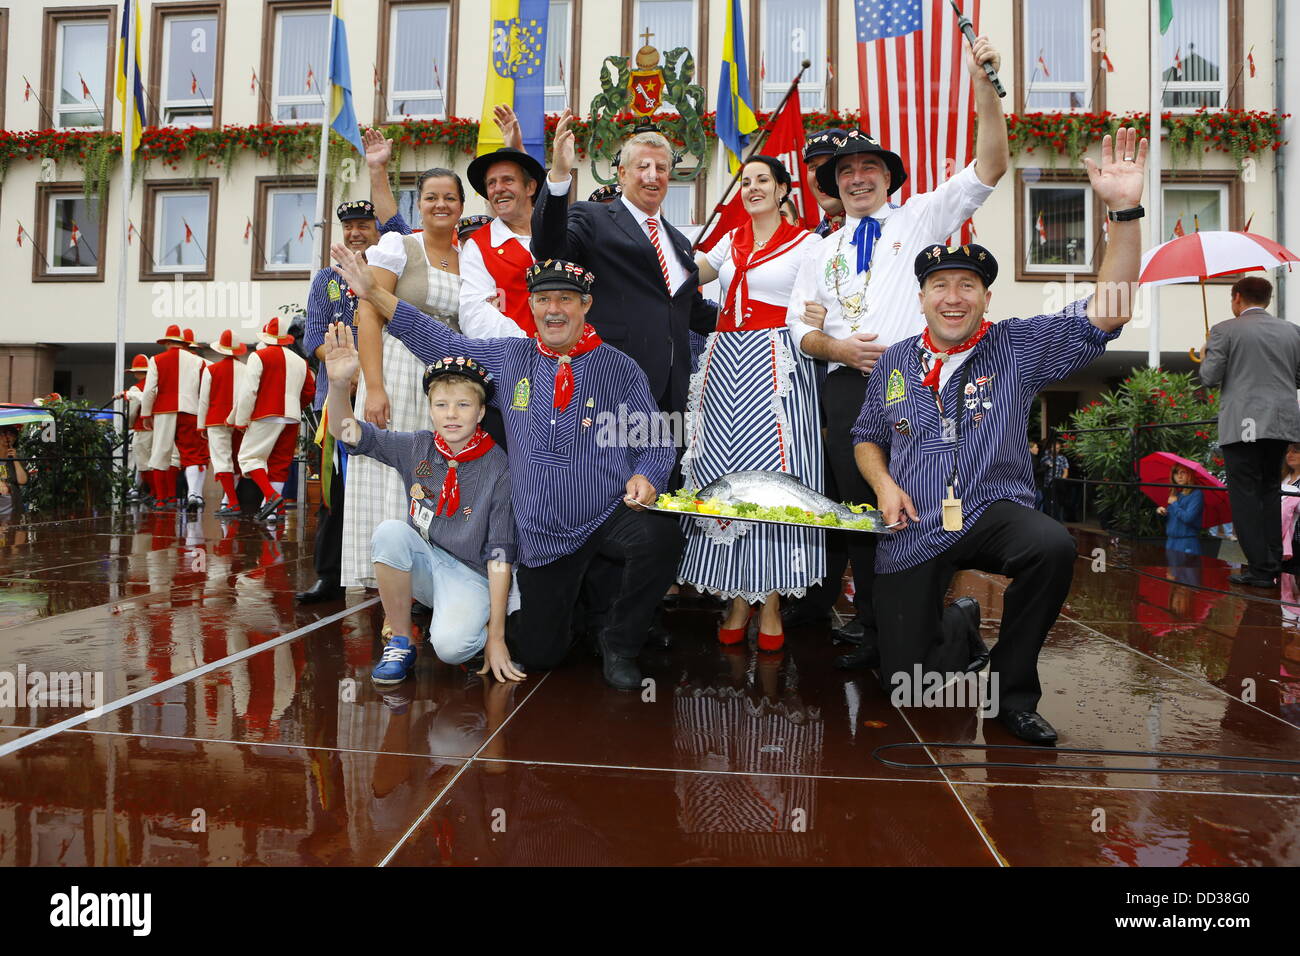 Worms, Allemagne. 25 août 2013. Le maire de vers, Michael Kissel (4. R), l'FischerwŠŠd BojemŠŠschter vun de (maire de l'fishermenÕs lea), Markus Trapp (2. R) et son épouse Jana Berger (3. R) sont illustrés avec des représentants de l'ancienne guilde des pêcheurs de vers. La plus grande foire aux vins le long du Rhin, le Backfischfest, a commencé ses 80 ans à Worms avec la traditionnelle passation de pouvoirs du maire au maire de l'fishermenÕs lea. La cérémonie comprenait des danses et de la musique. Crédit : Michael Debets/Alamy Live News Banque D'Images